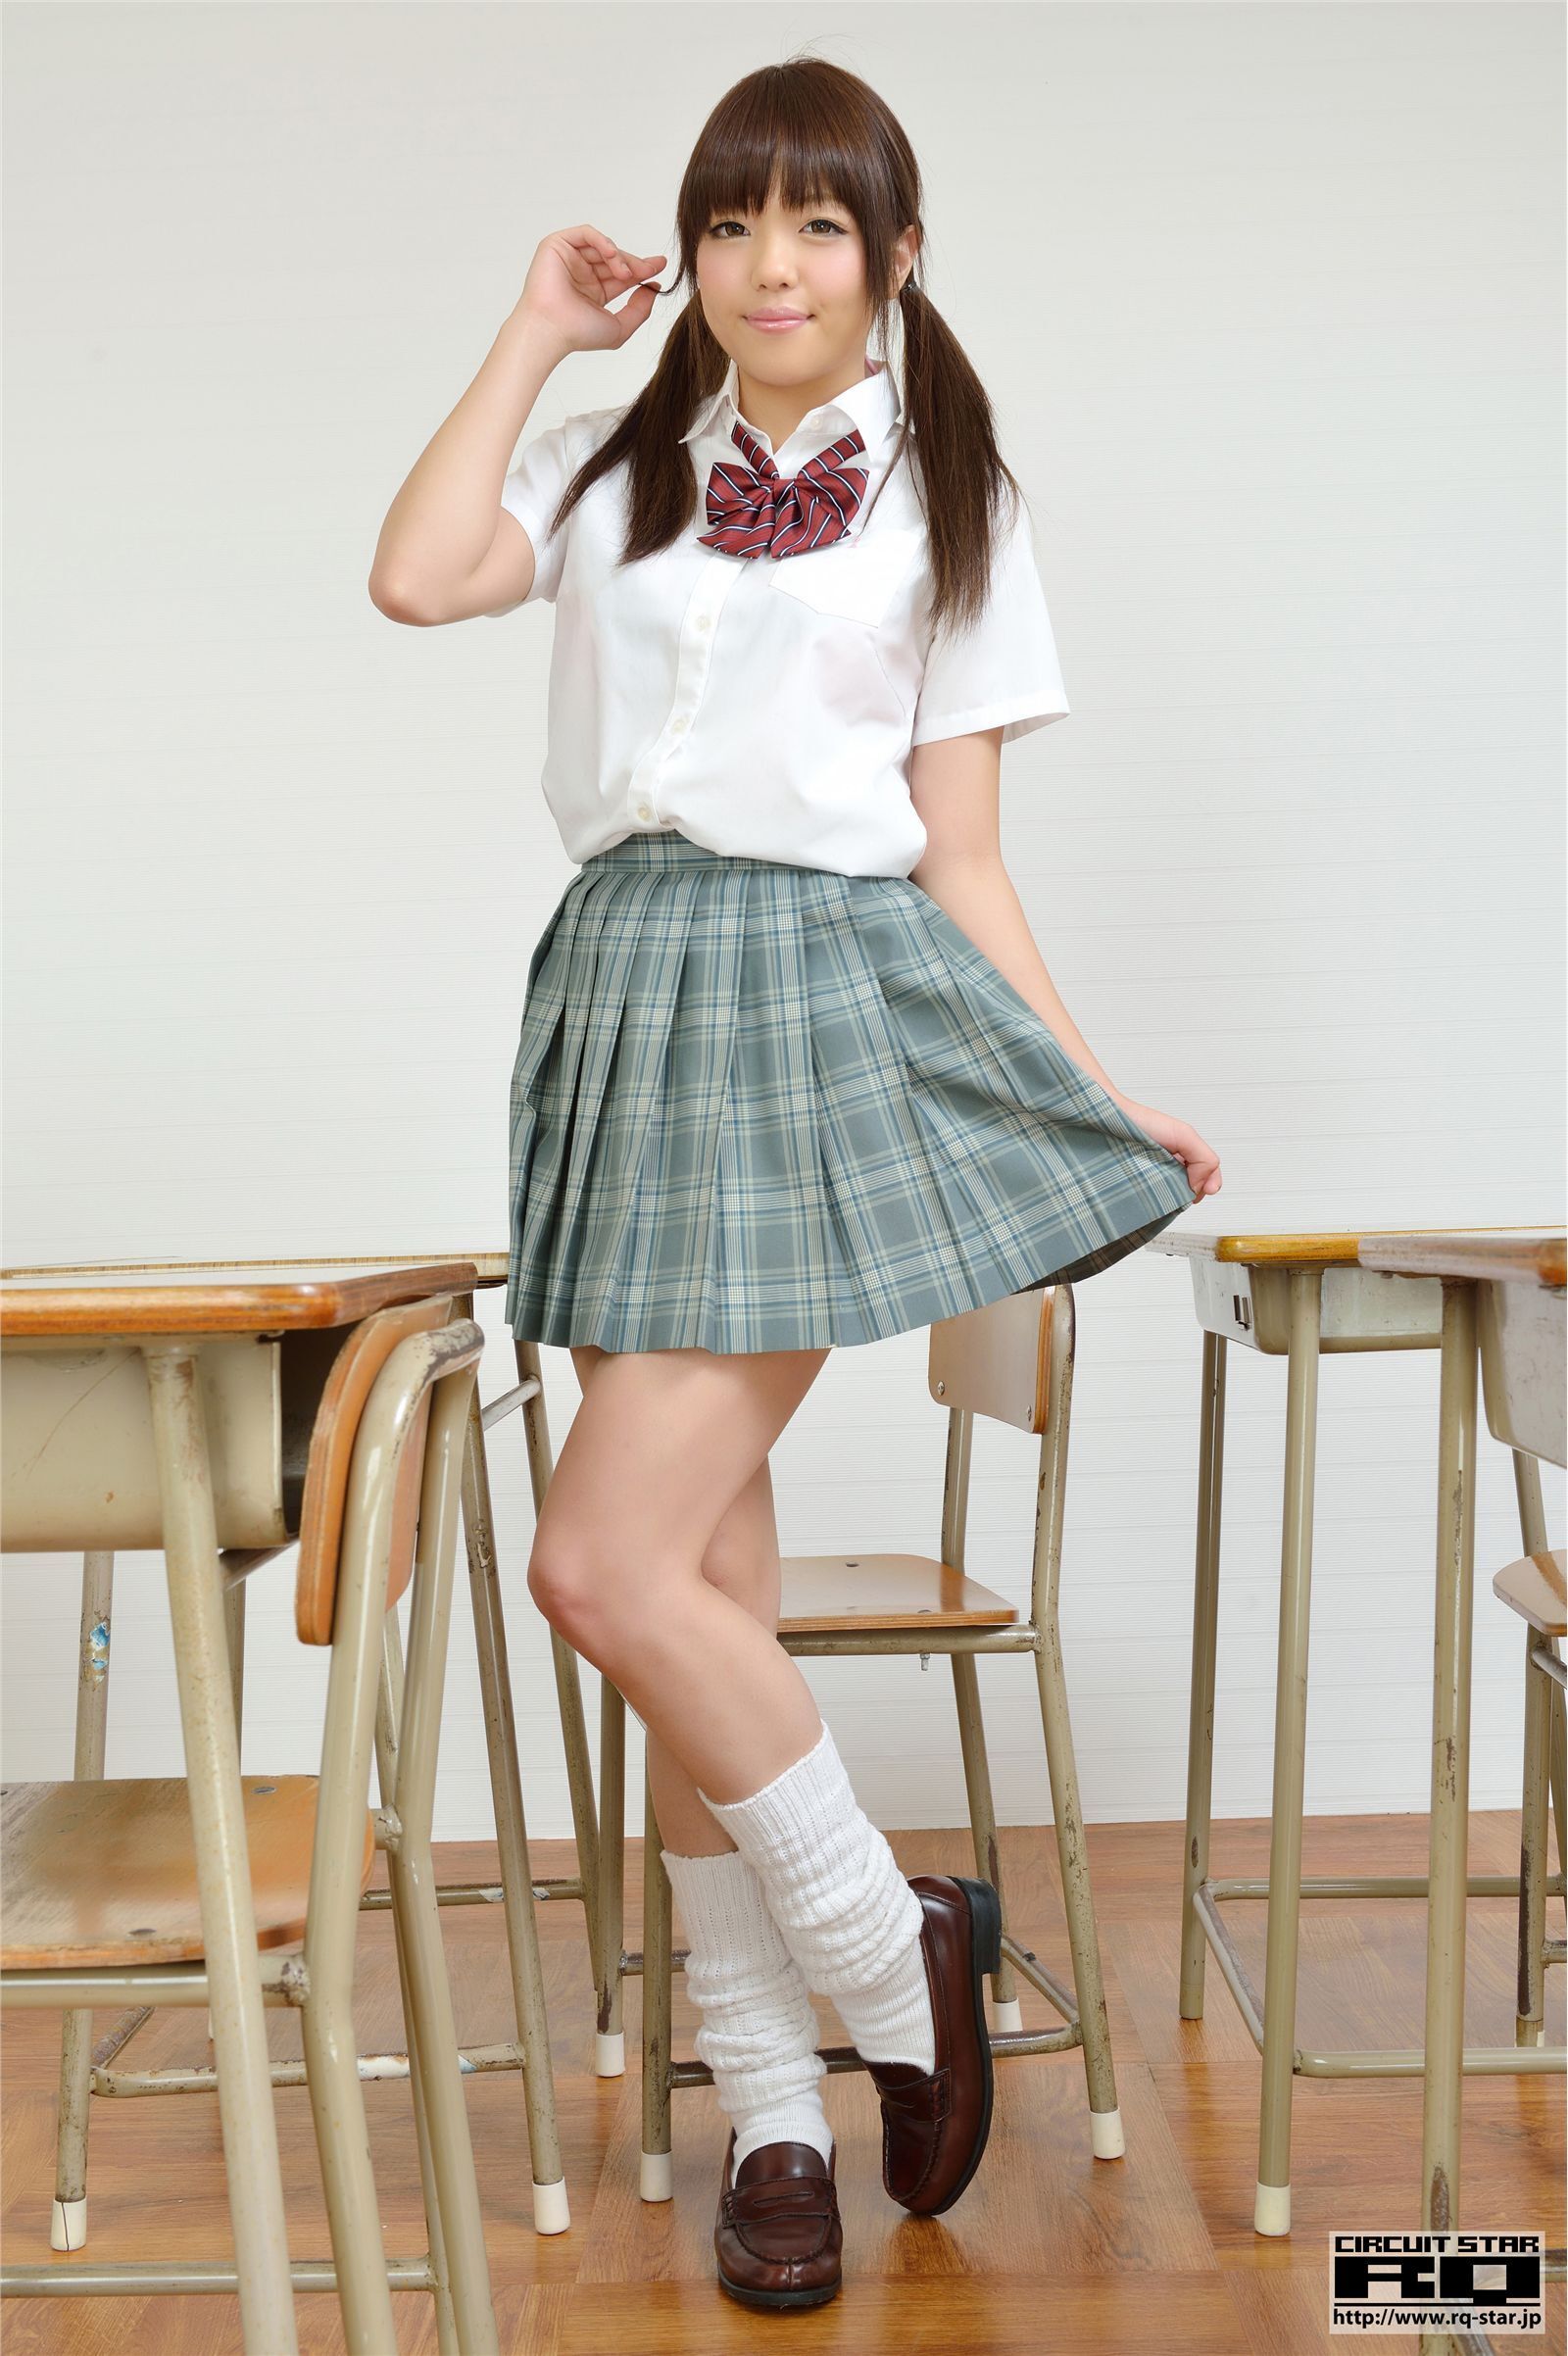 A Japanese uniform beautiful woman